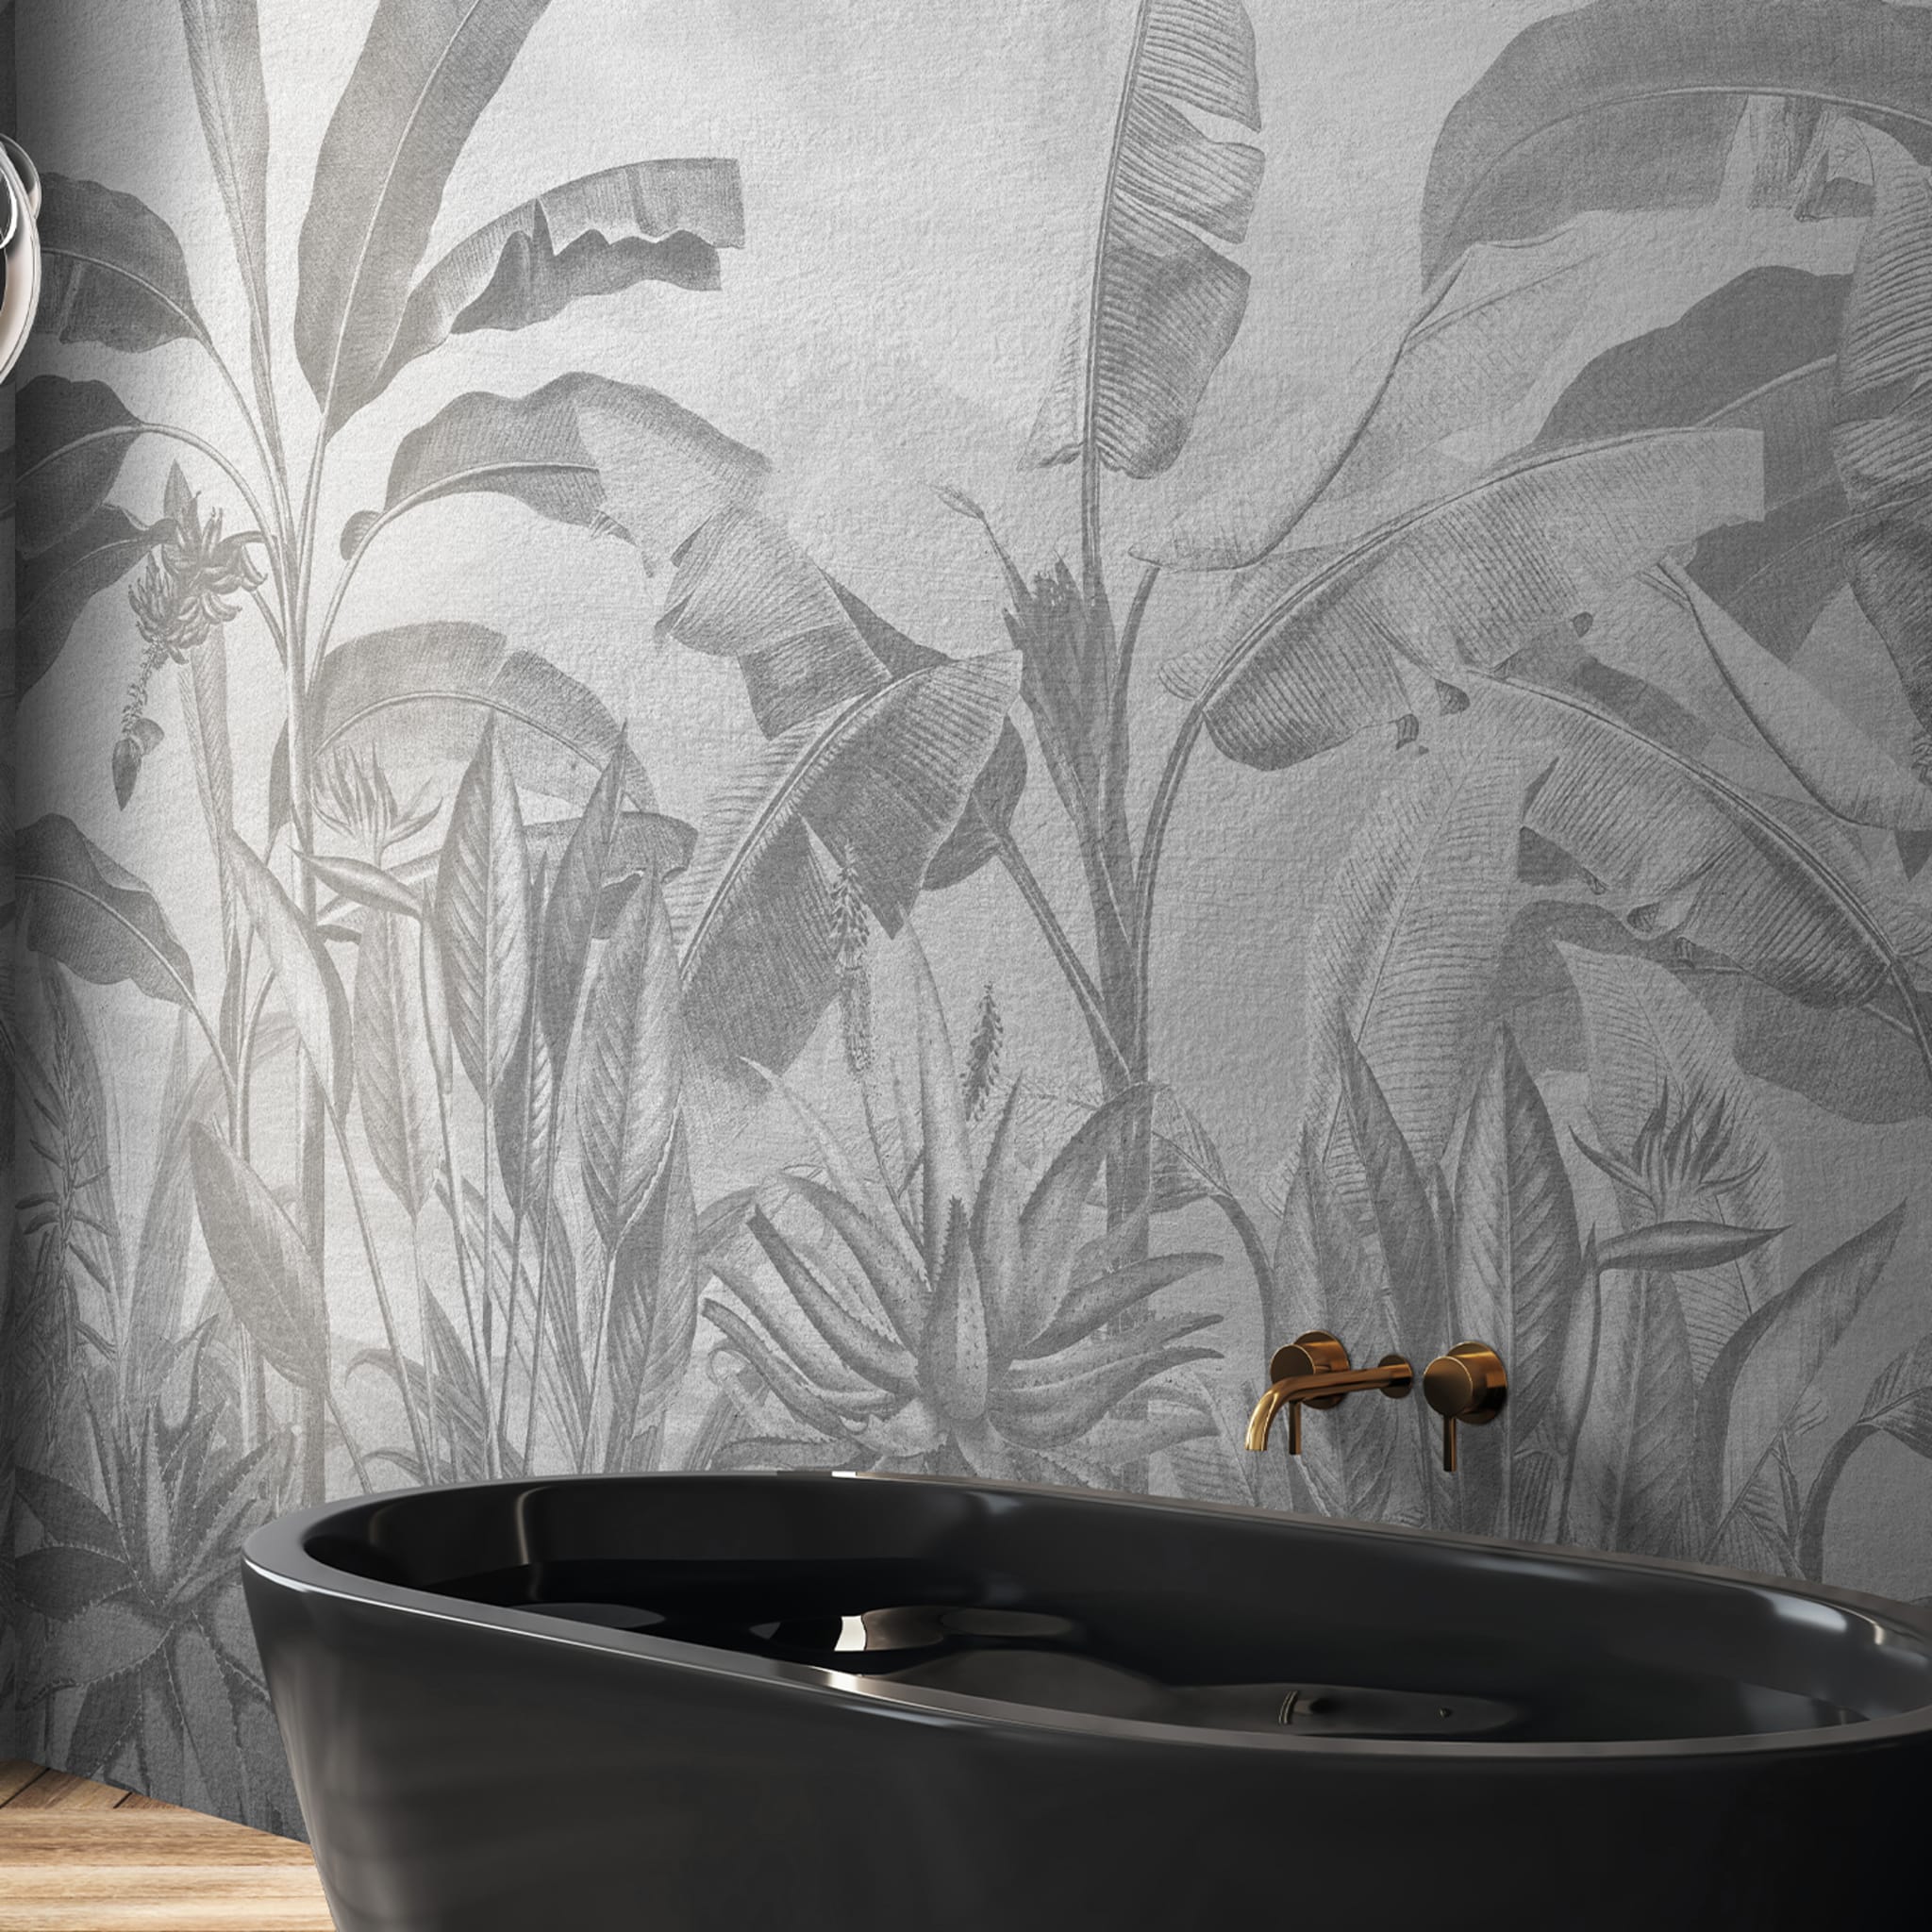 B&W plants textured wallpaper - Alternative view 1